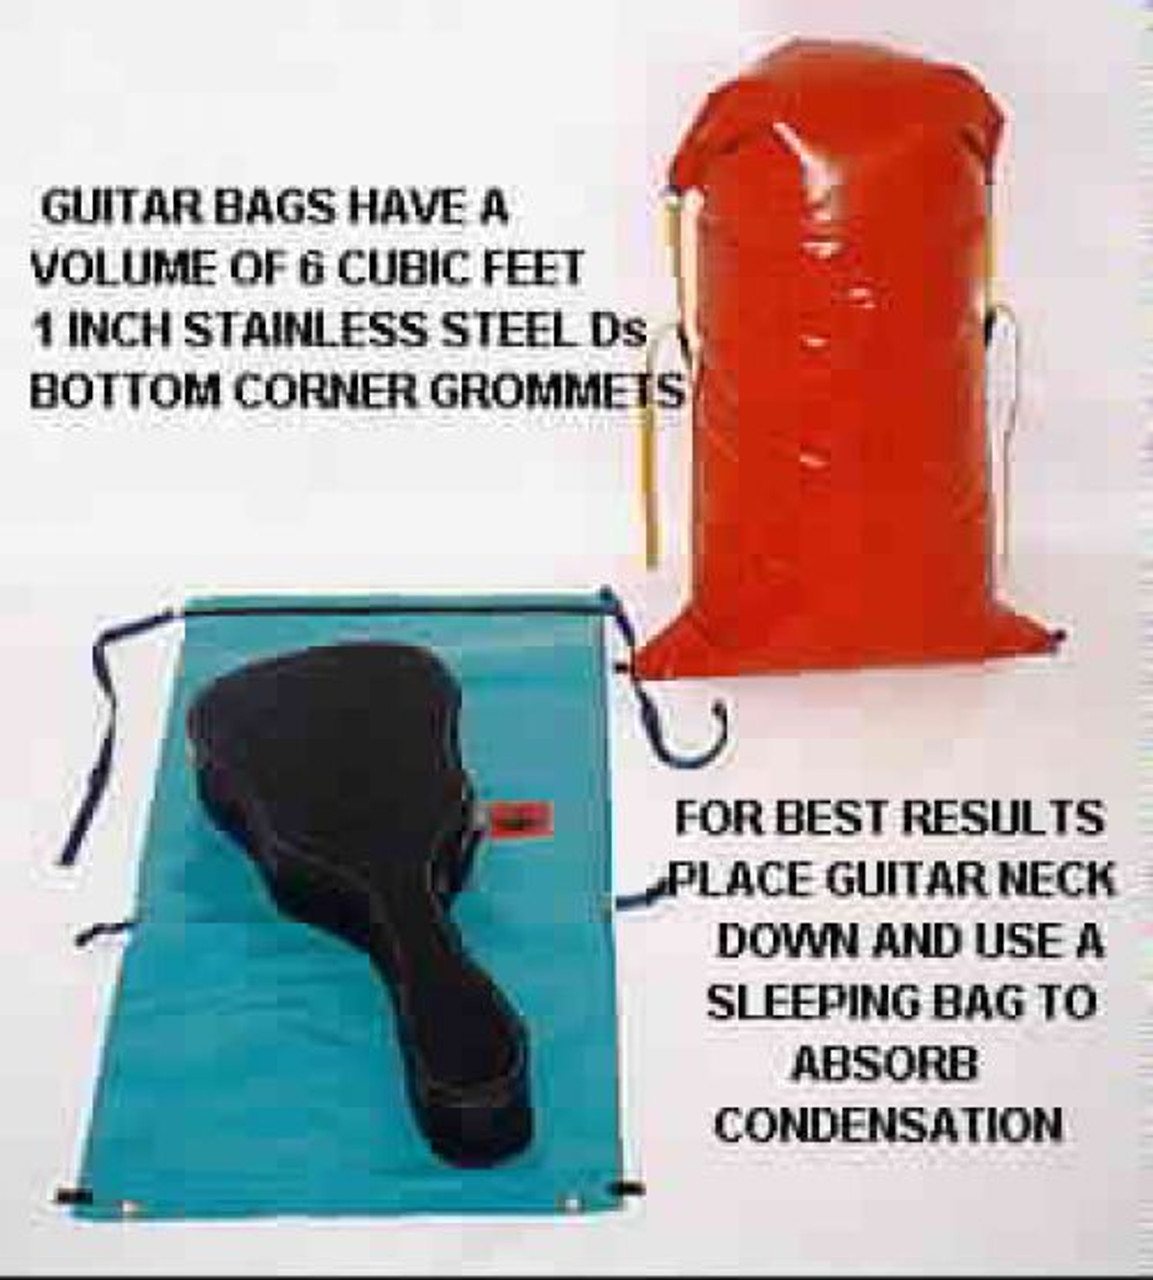 Rectangular Bottom Collapsible Bucket - Jacks Plastic Welding